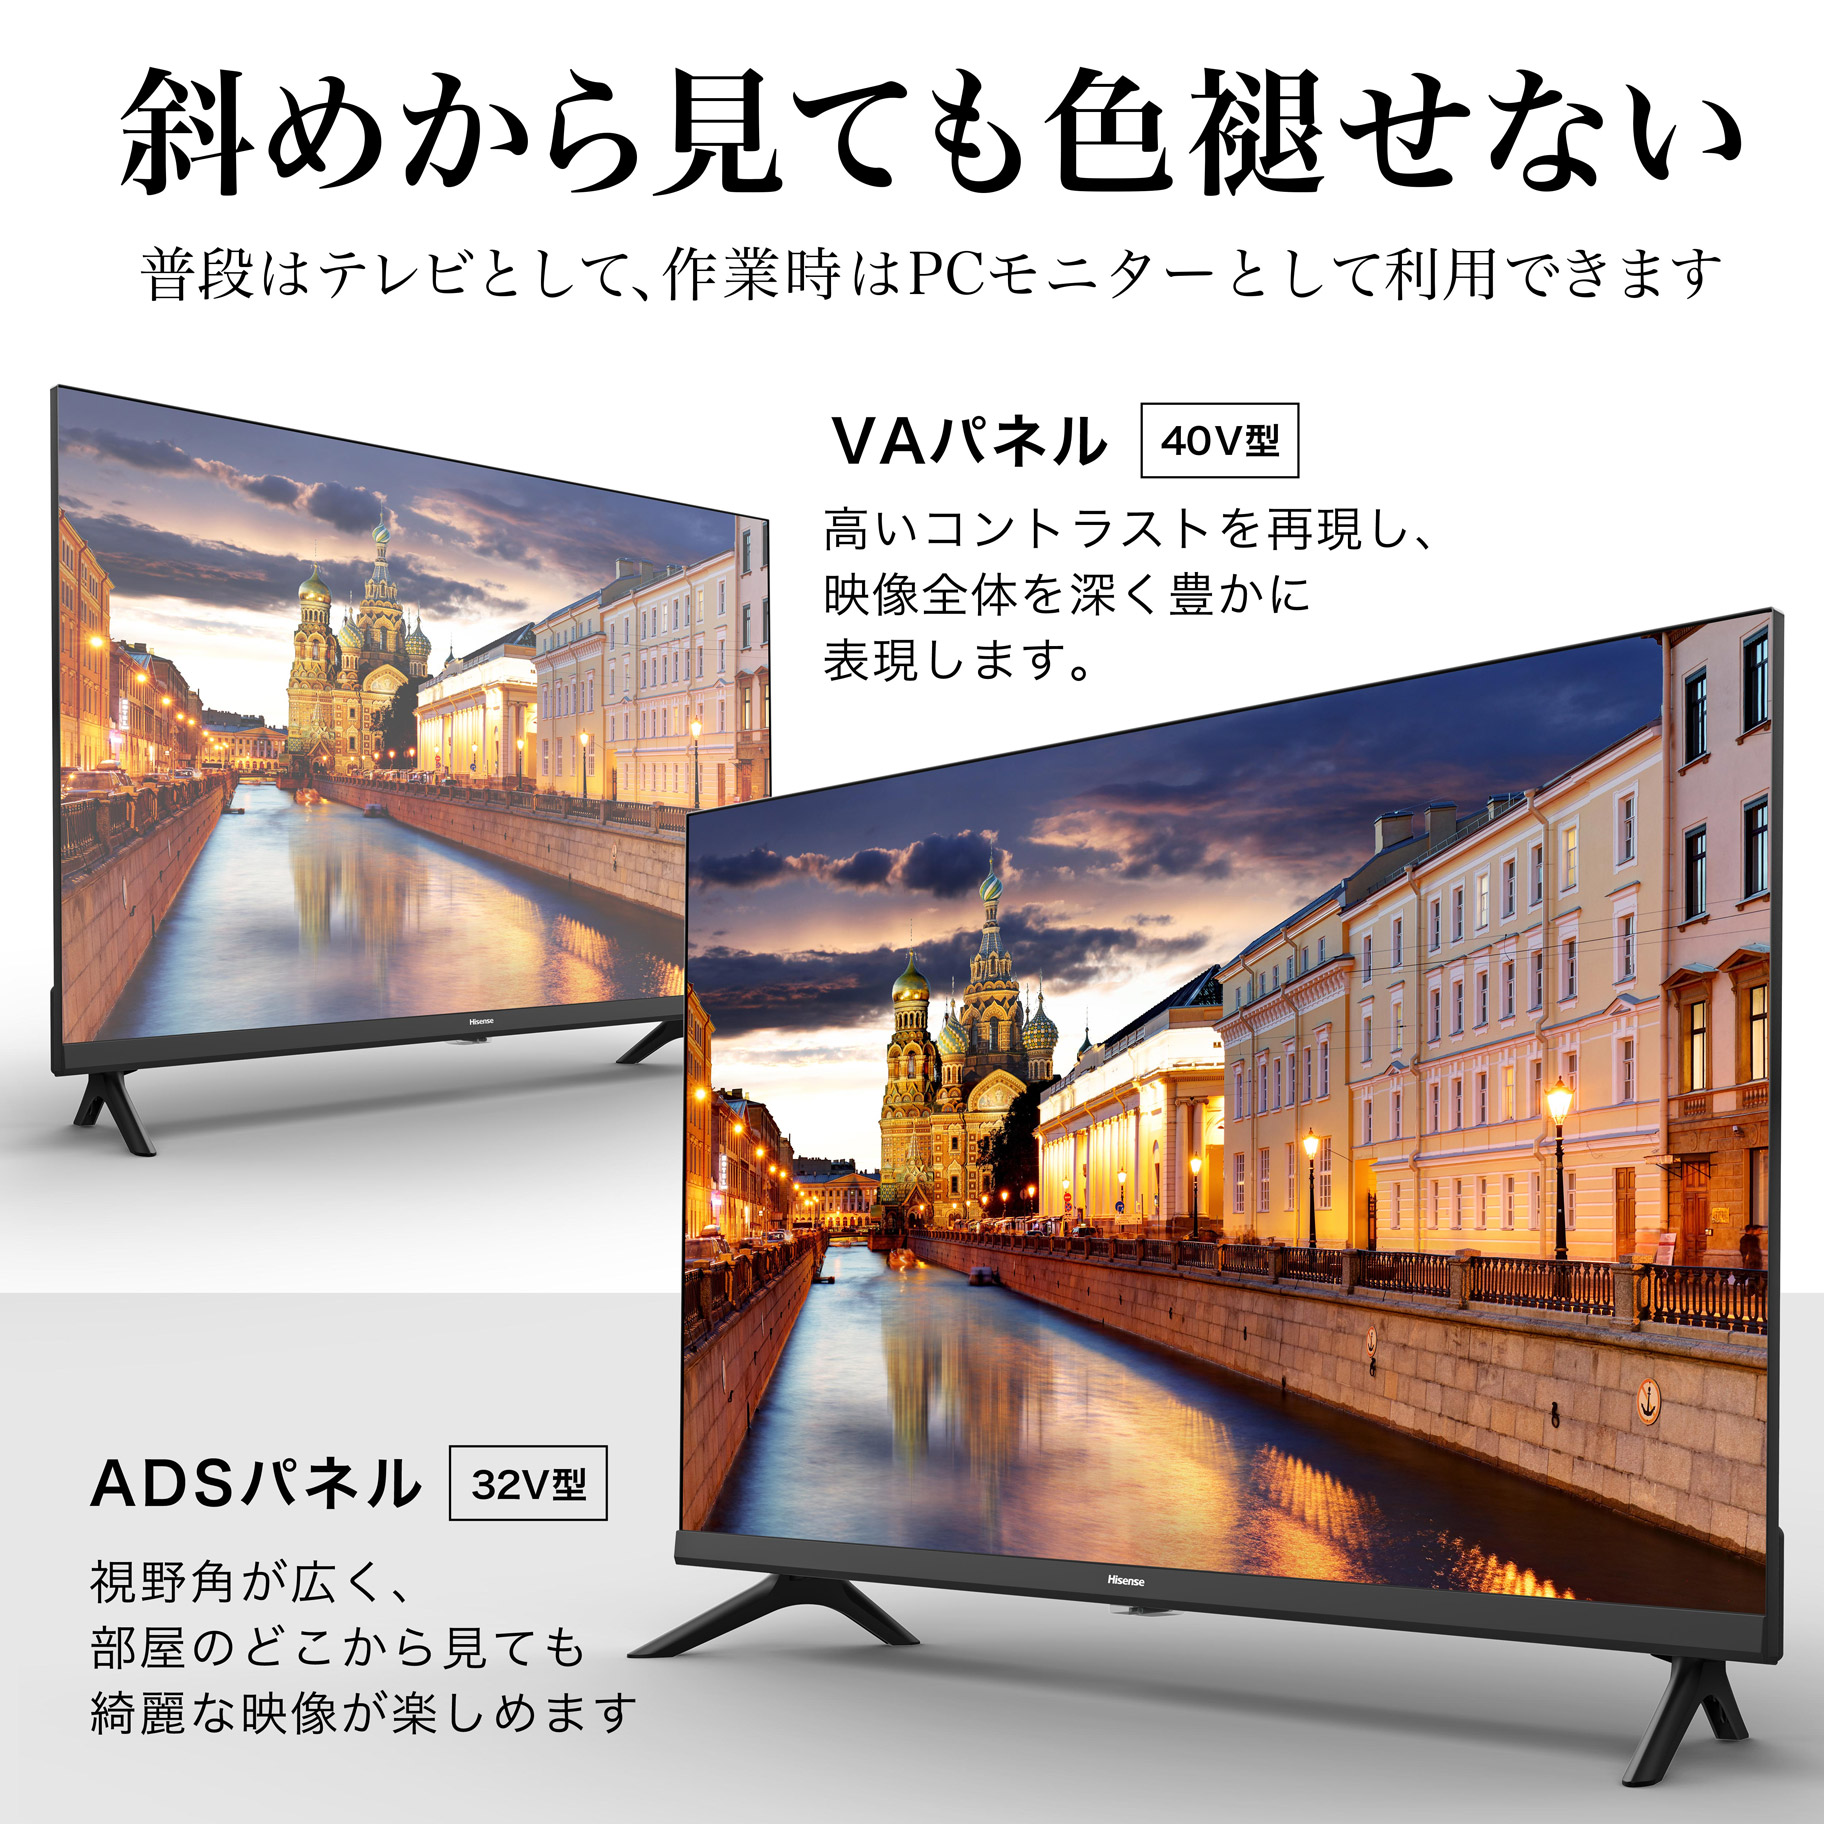 売れ筋アイテムラン ハイセンス 32V型 ハイビジョン 液晶 テレビ